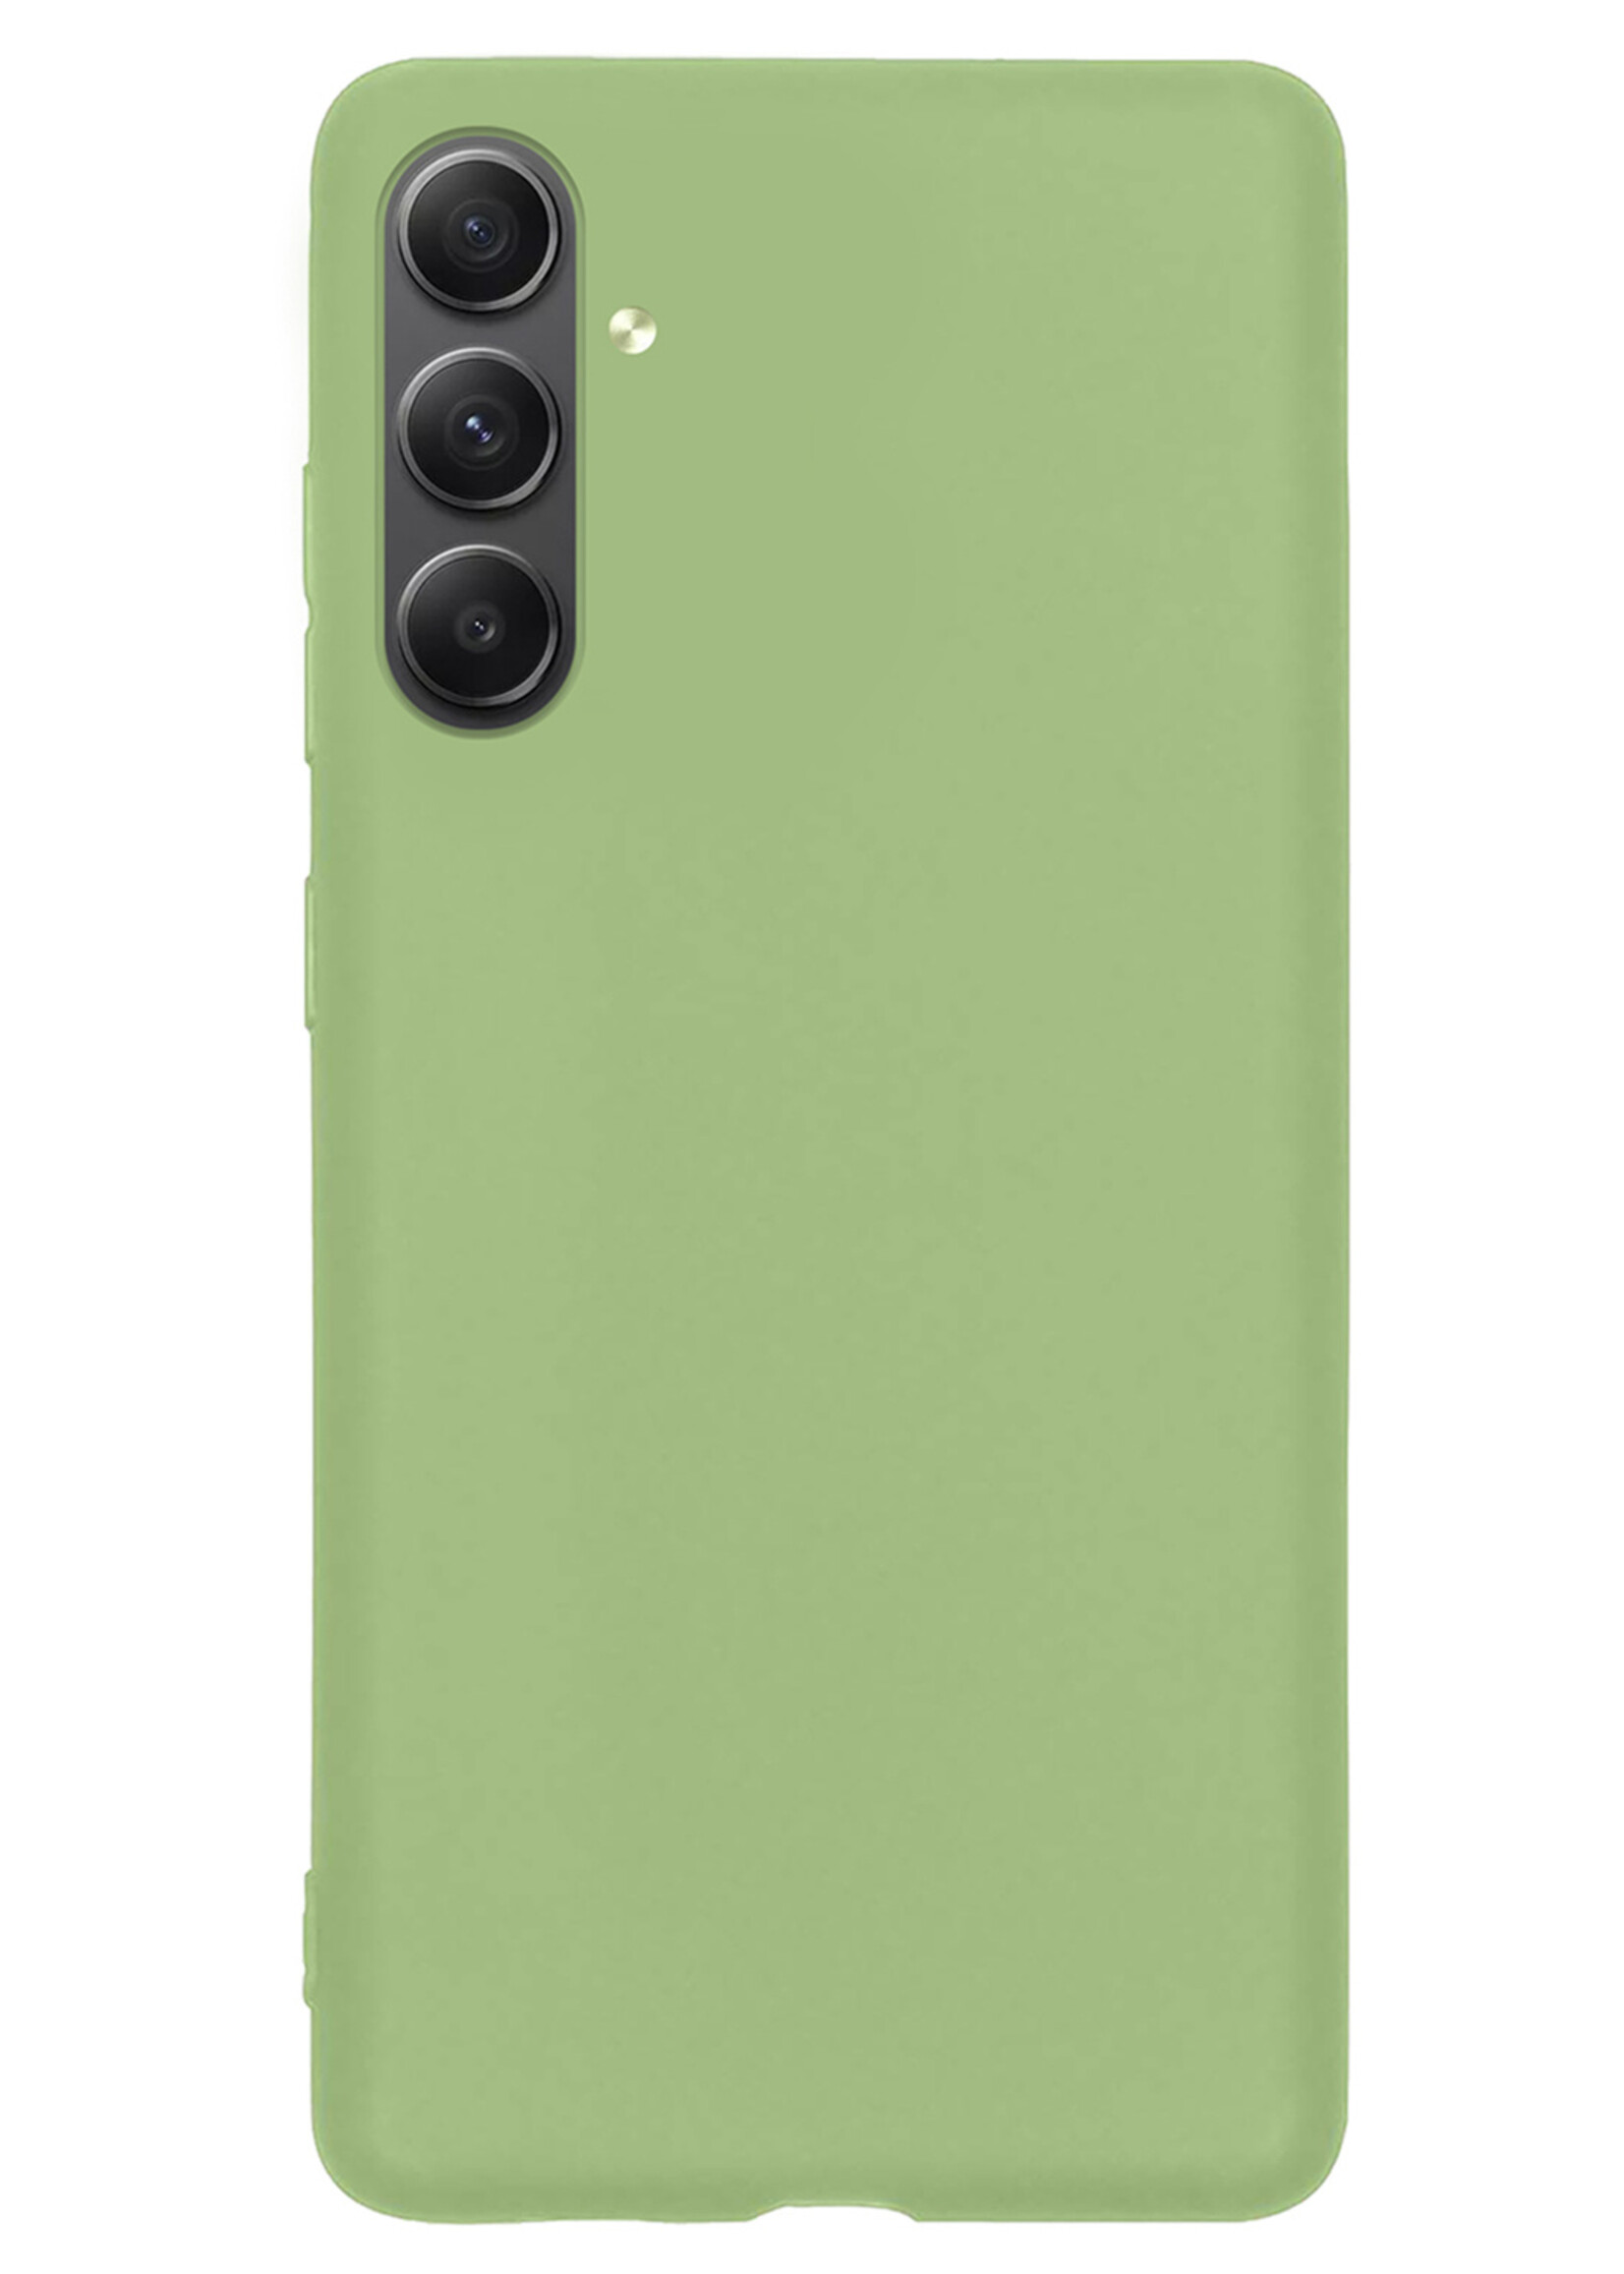 LUQ Hoesje Geschikt voor Samsung A54 Hoesje Siliconen Case - Hoes Geschikt voor Samsung Galaxy A54 Hoes Siliconen - Groen - 2 Stuks